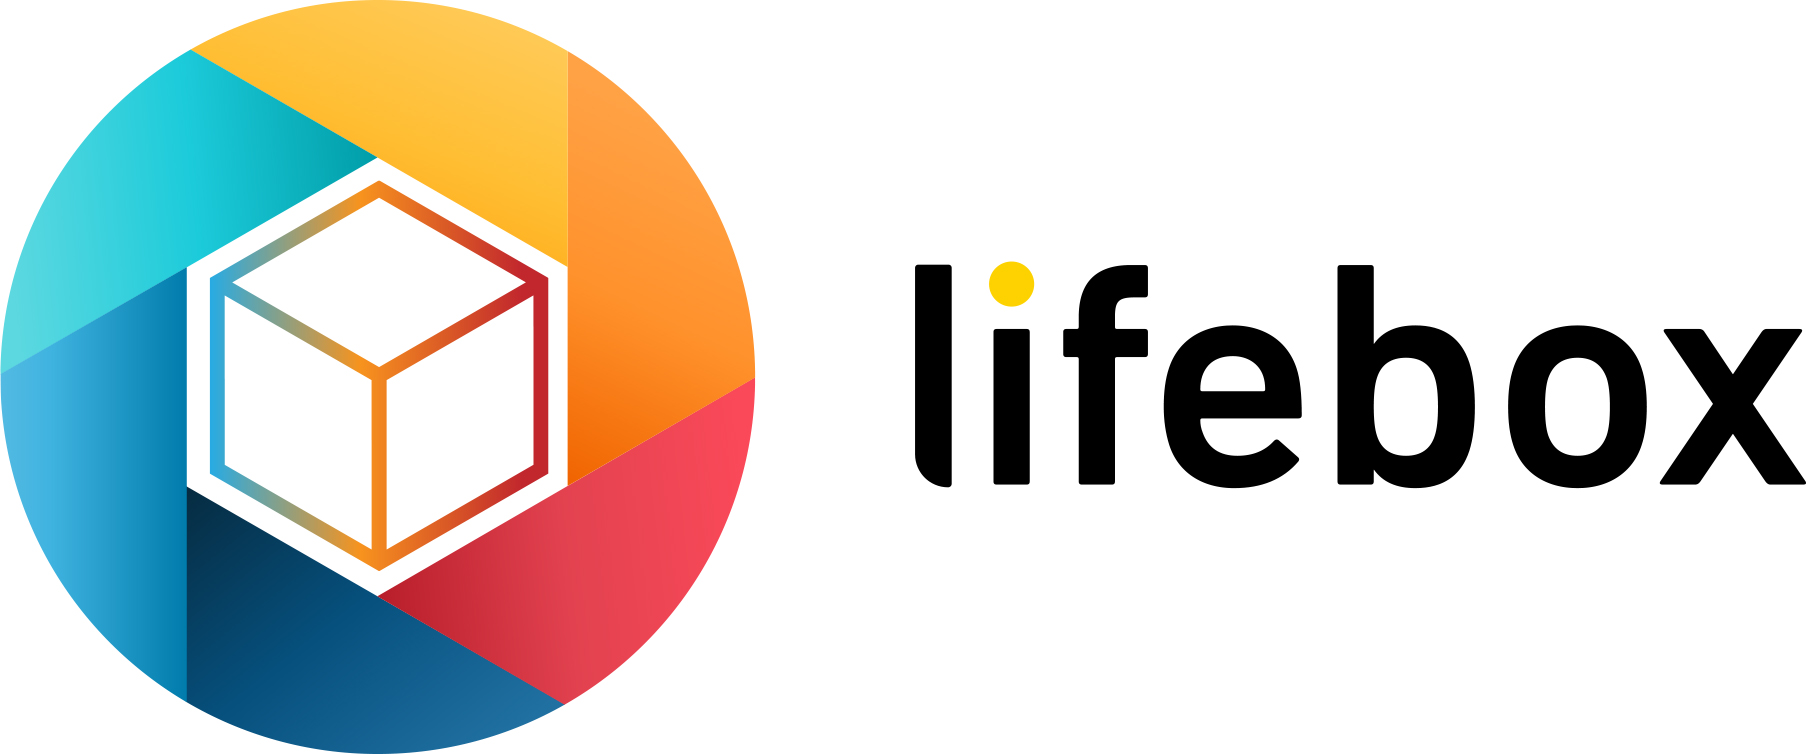 Turkcell, Akıllı Depo’yu lifebox ismiyle global pazara açıyor